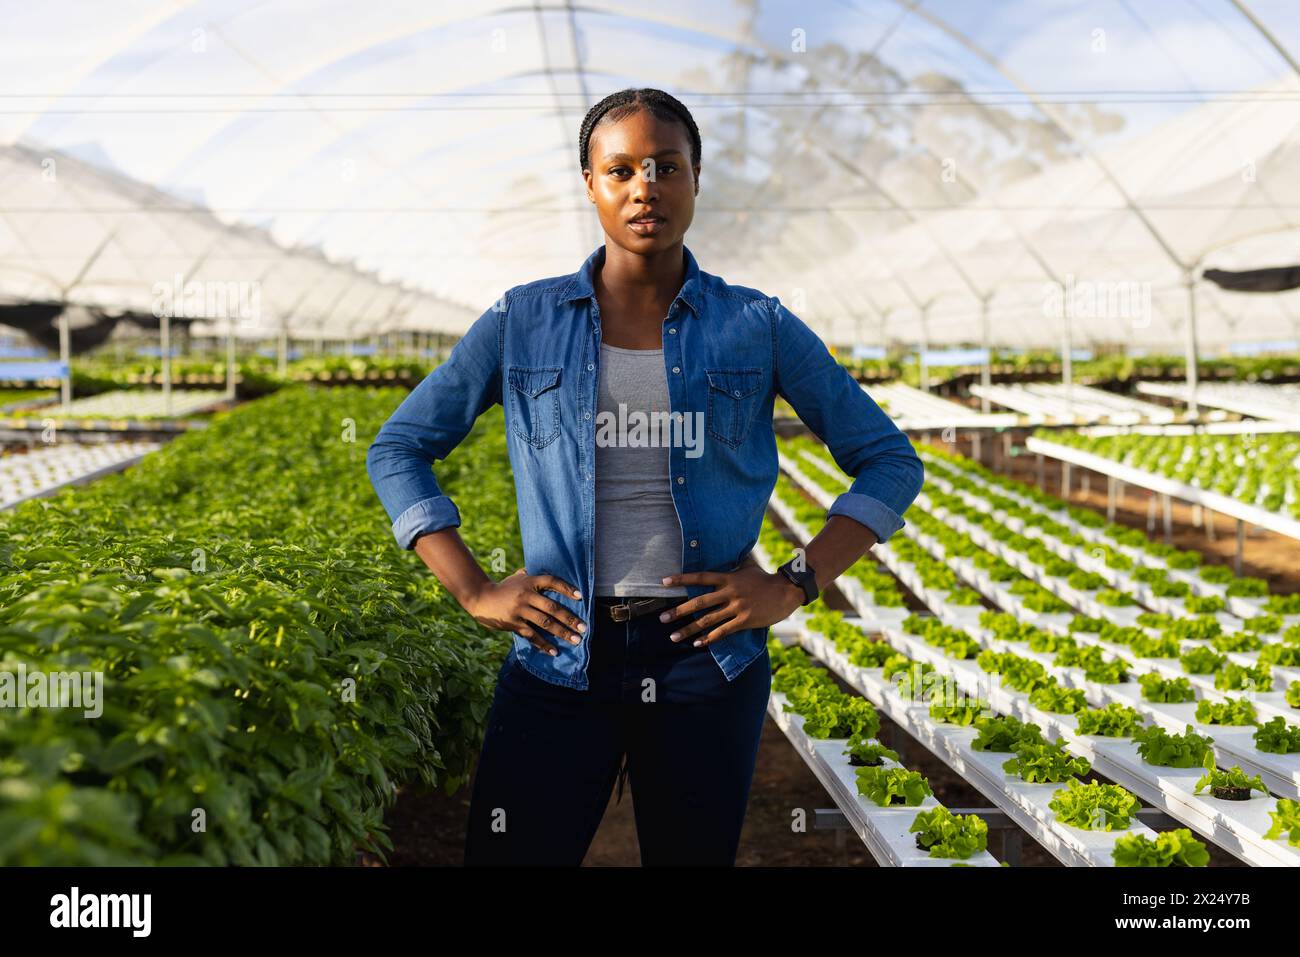 Jeune femme afro-américaine surveillante de ferme debout dans la ferme hydroponique de serre, mains sur les hanches, espace de copie. Elle porte une chemise en denim, a un bl court Banque D'Images